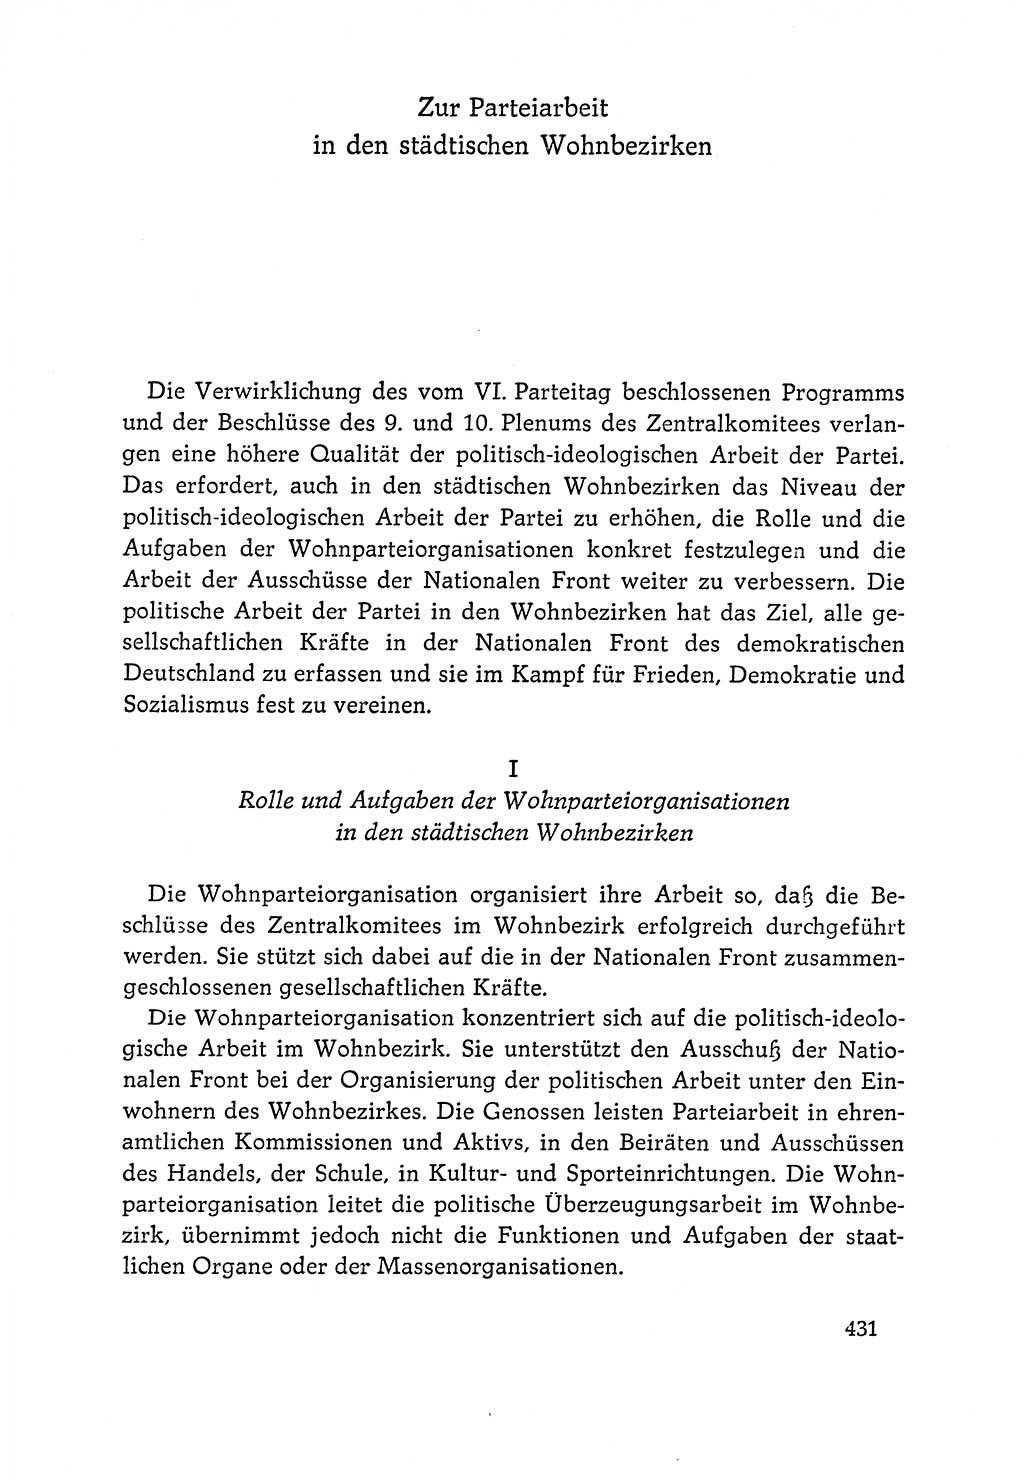 Dokumente der Sozialistischen Einheitspartei Deutschlands (SED) [Deutsche Demokratische Republik (DDR)] 1964-1965, Seite 431 (Dok. SED DDR 1964-1965, S. 431)